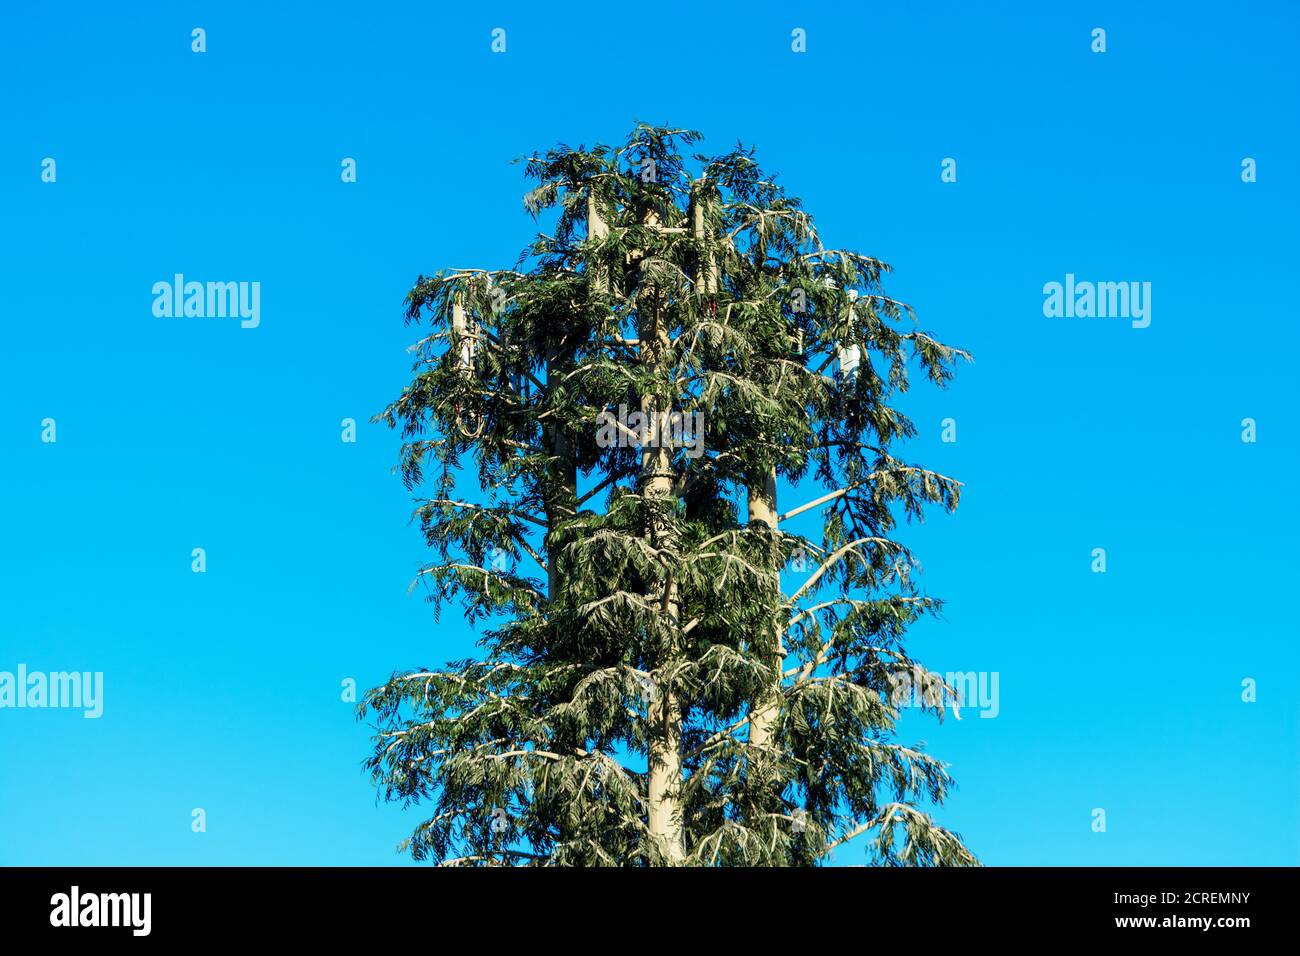 La torre del telefono cellulare mascherata e camuffata come un falso albero  di pino alto sotto il cielo blu. La stazione cellulare nascosta si  distingue per la forma del fogliame e b